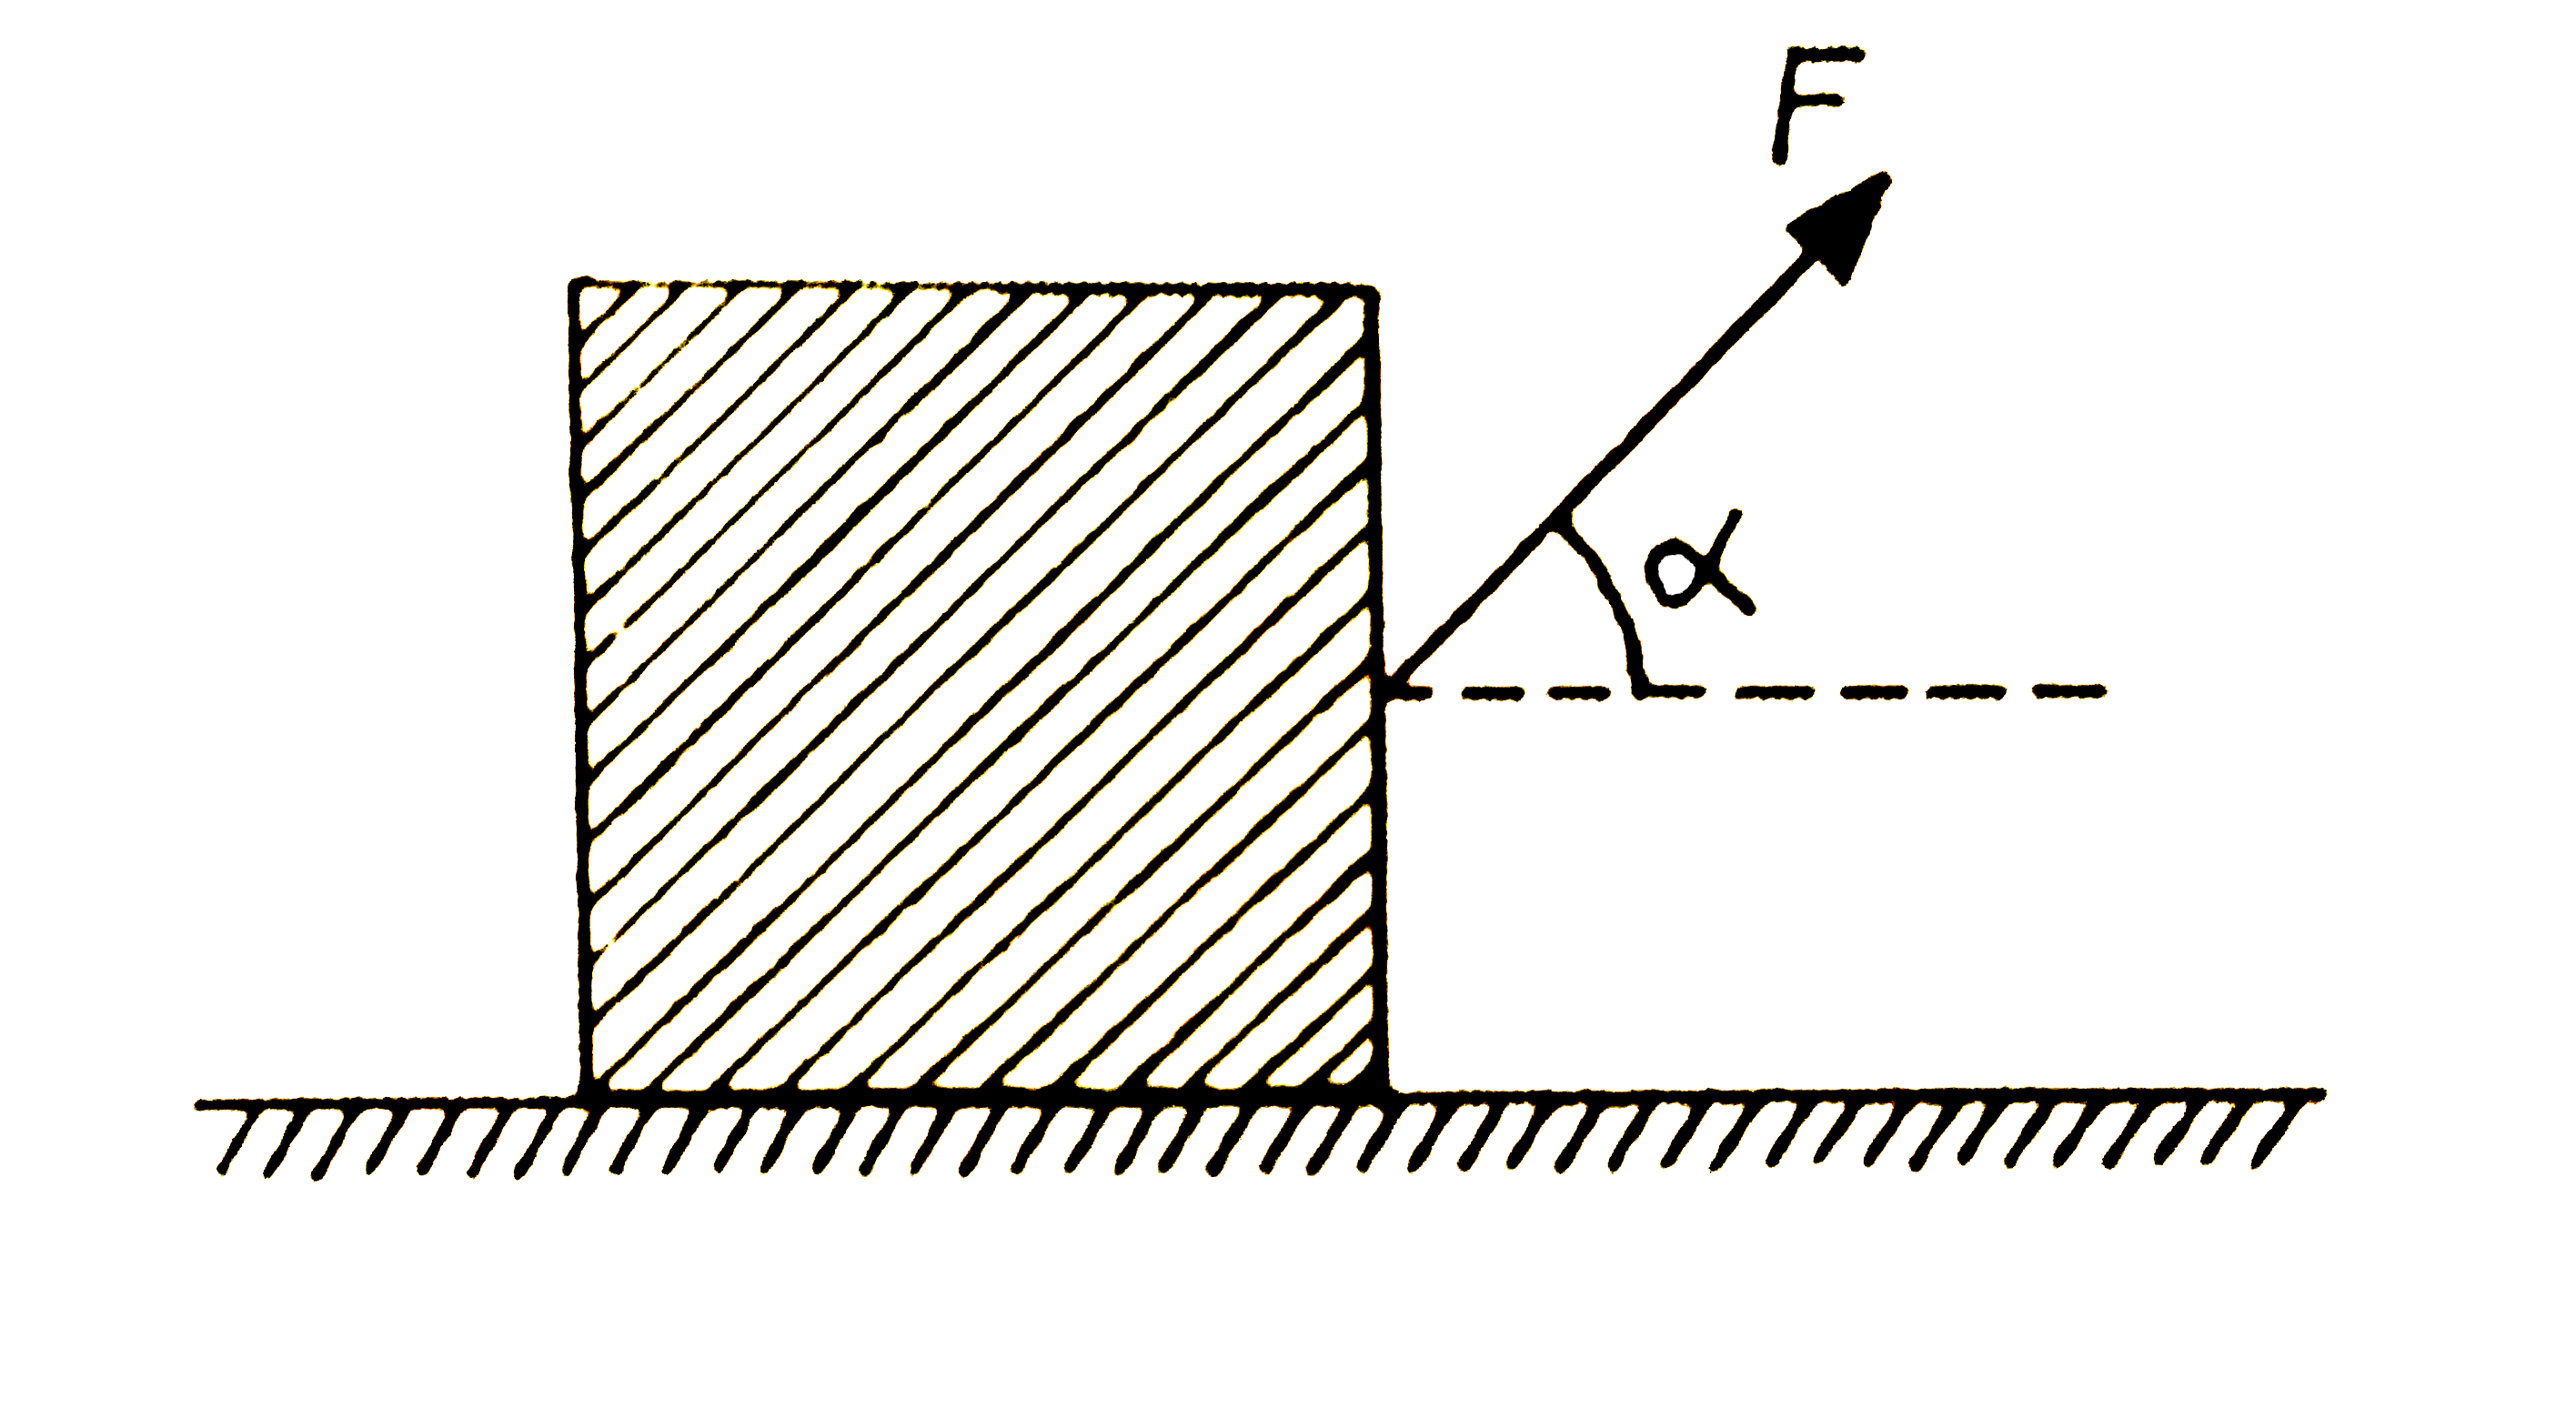 एक बक्से को बल F लगाकर एक खुरदरे तल पर नियत वेग से घसीटा जाता है, जैसा कि चित्र में दिखाया गया है। घर्षण कौन theta है। बल F न्यूनतम होगा, जब: